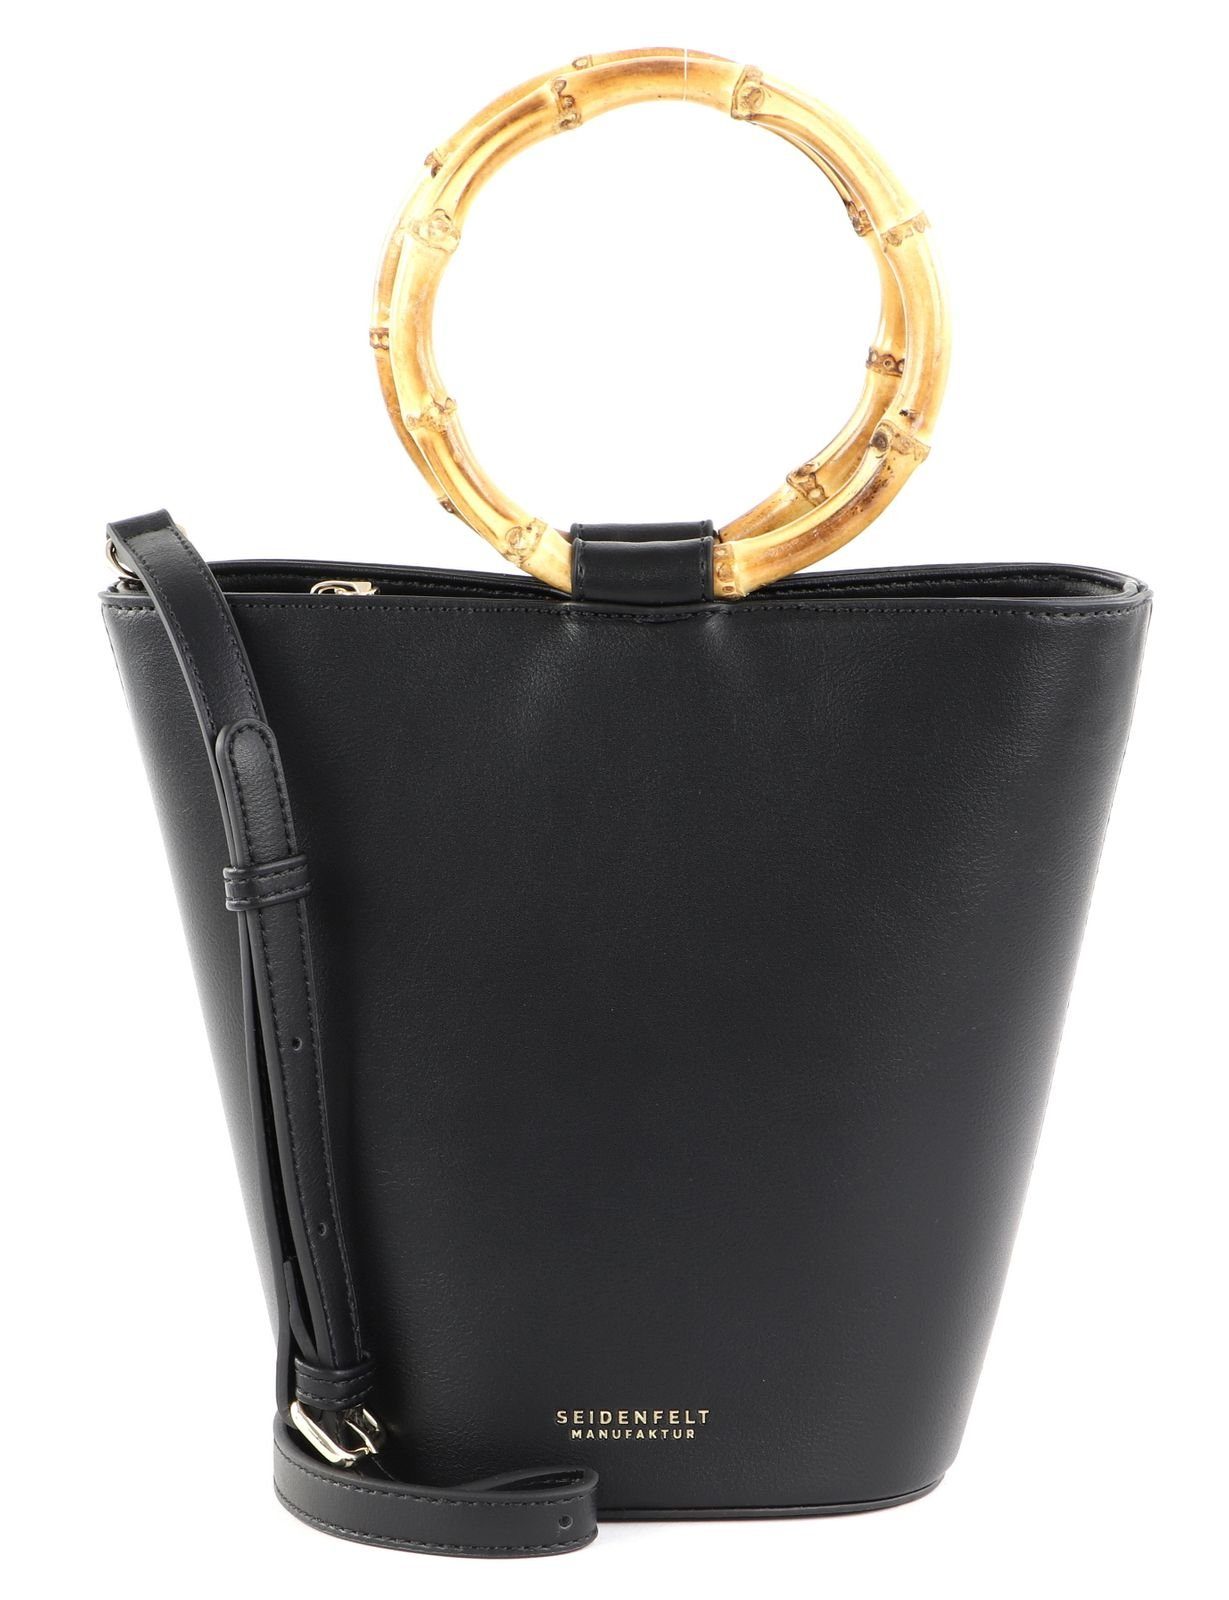 Seidenfelt Manufaktur Handtasche Black / Gold